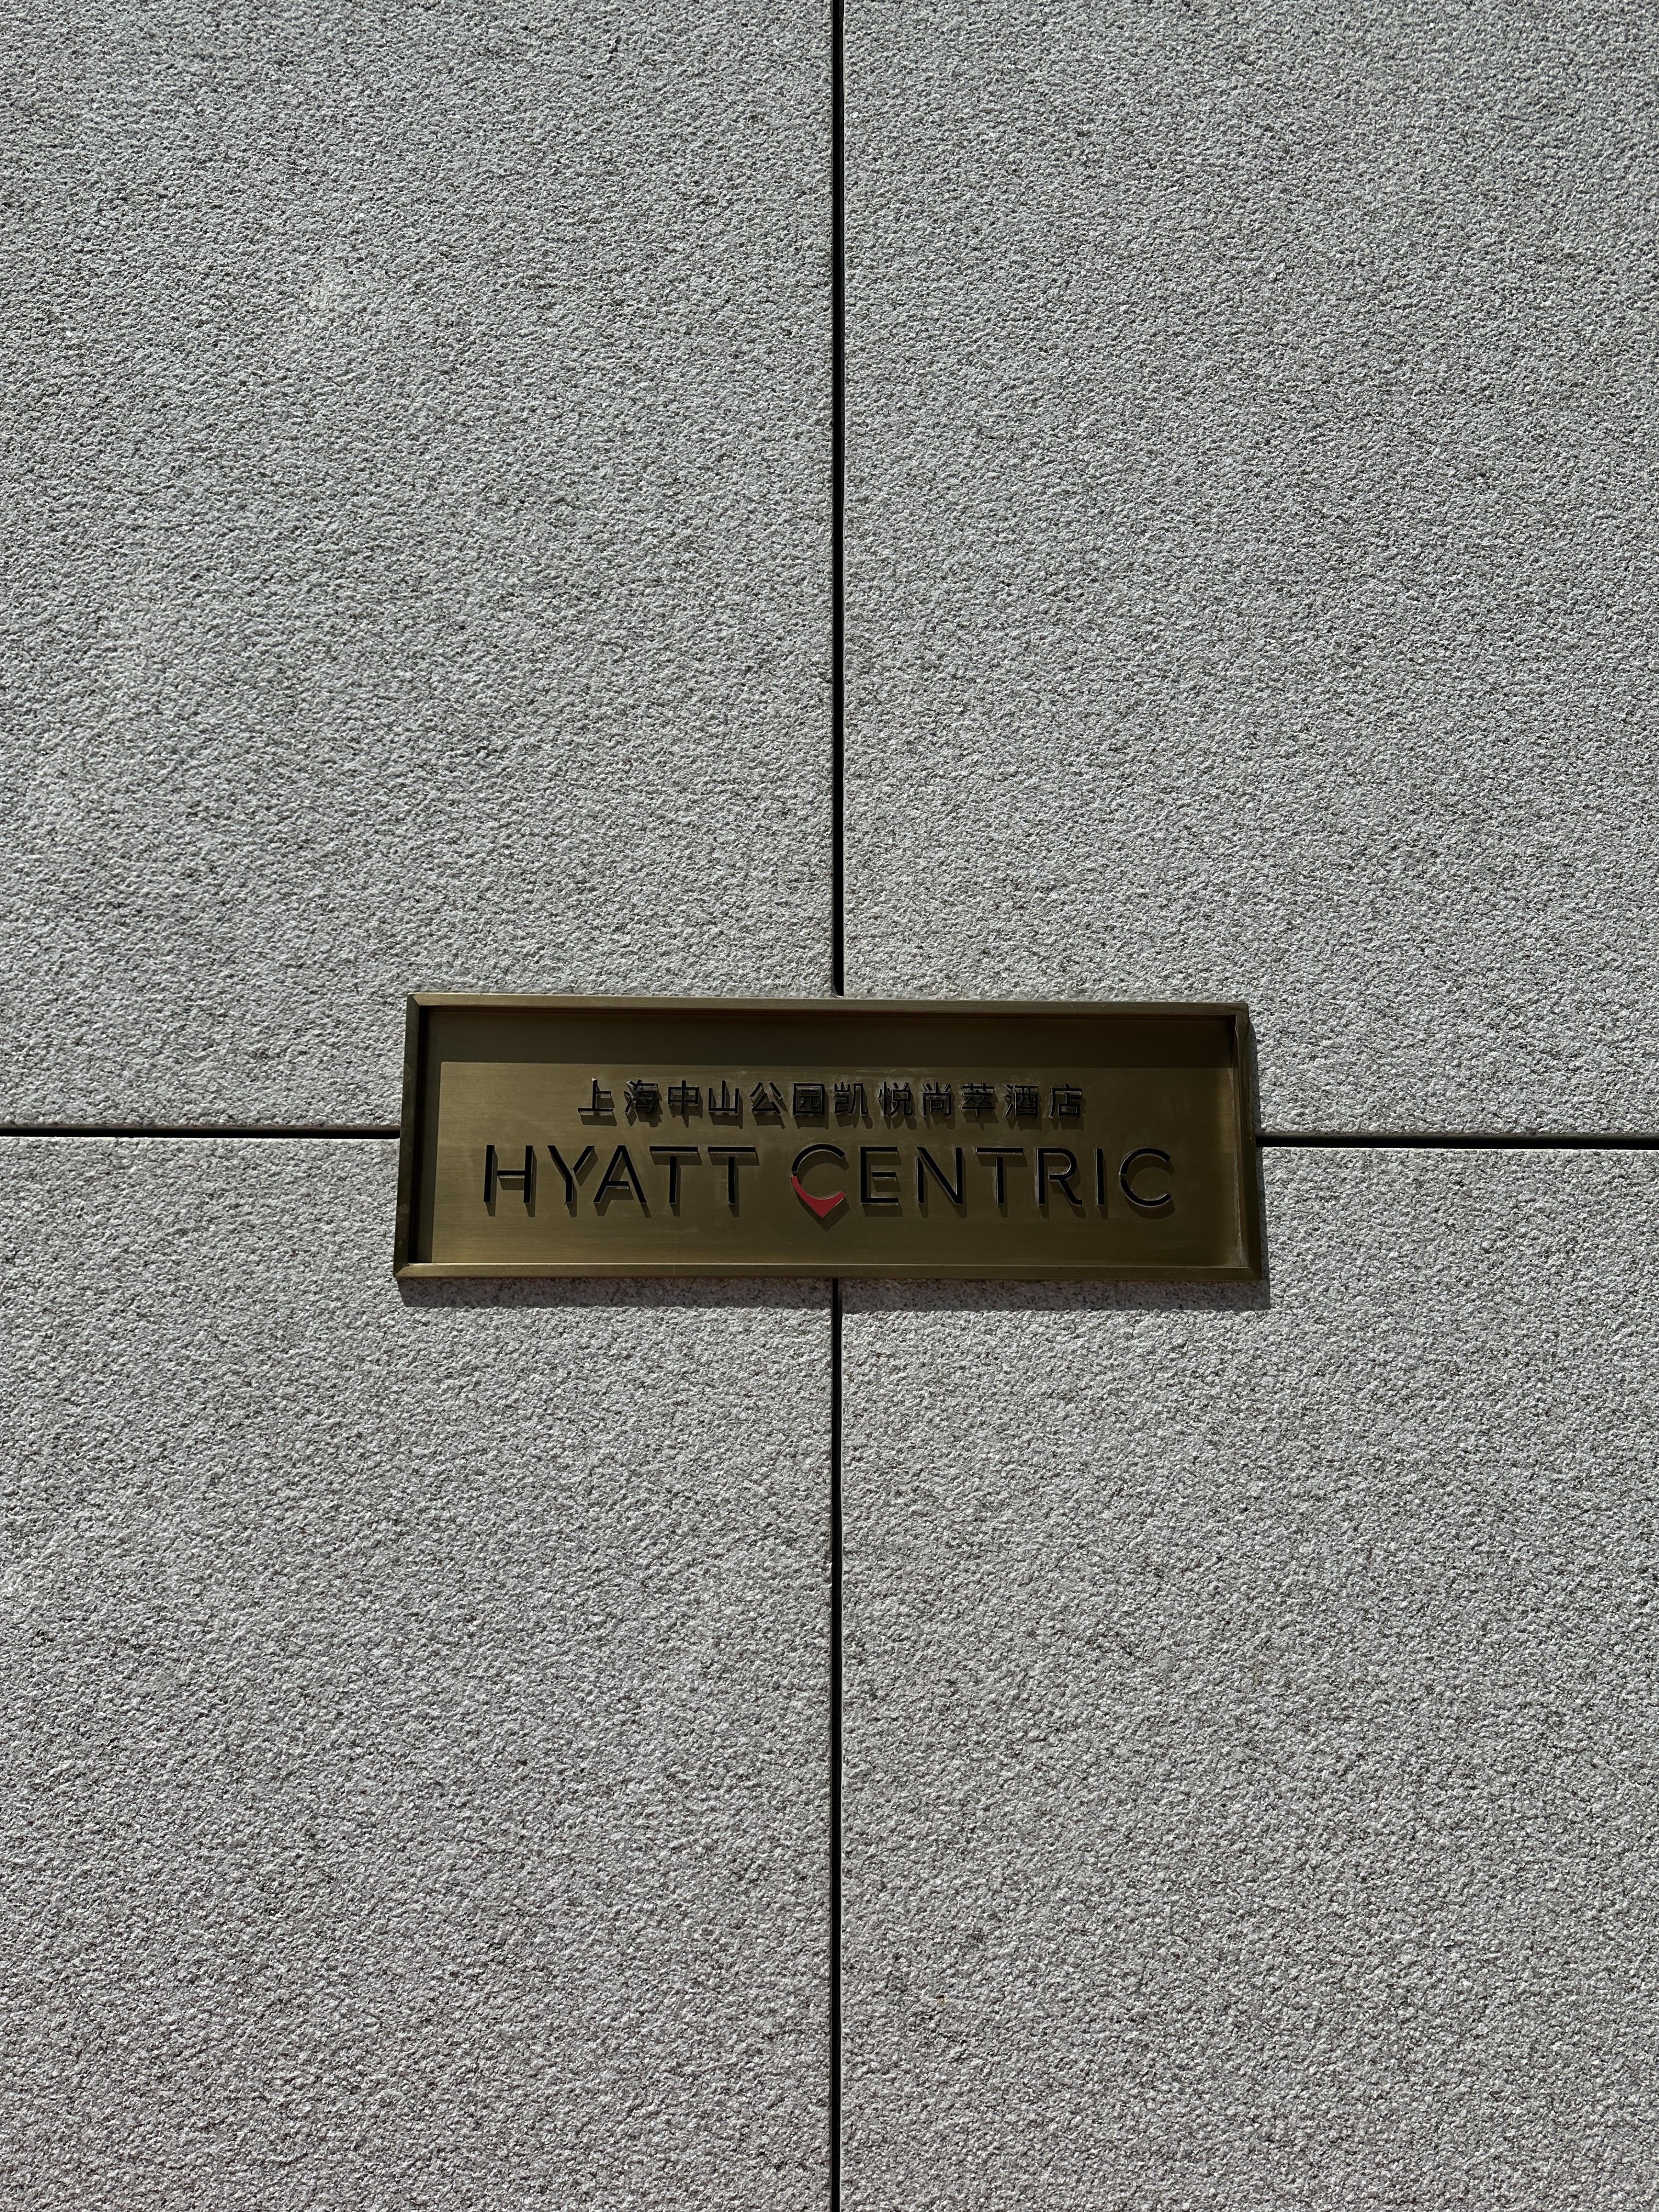 Ϻɽ԰/ Hyatt Centric/Caption by Hyatt Zhongshan Park Shanghai